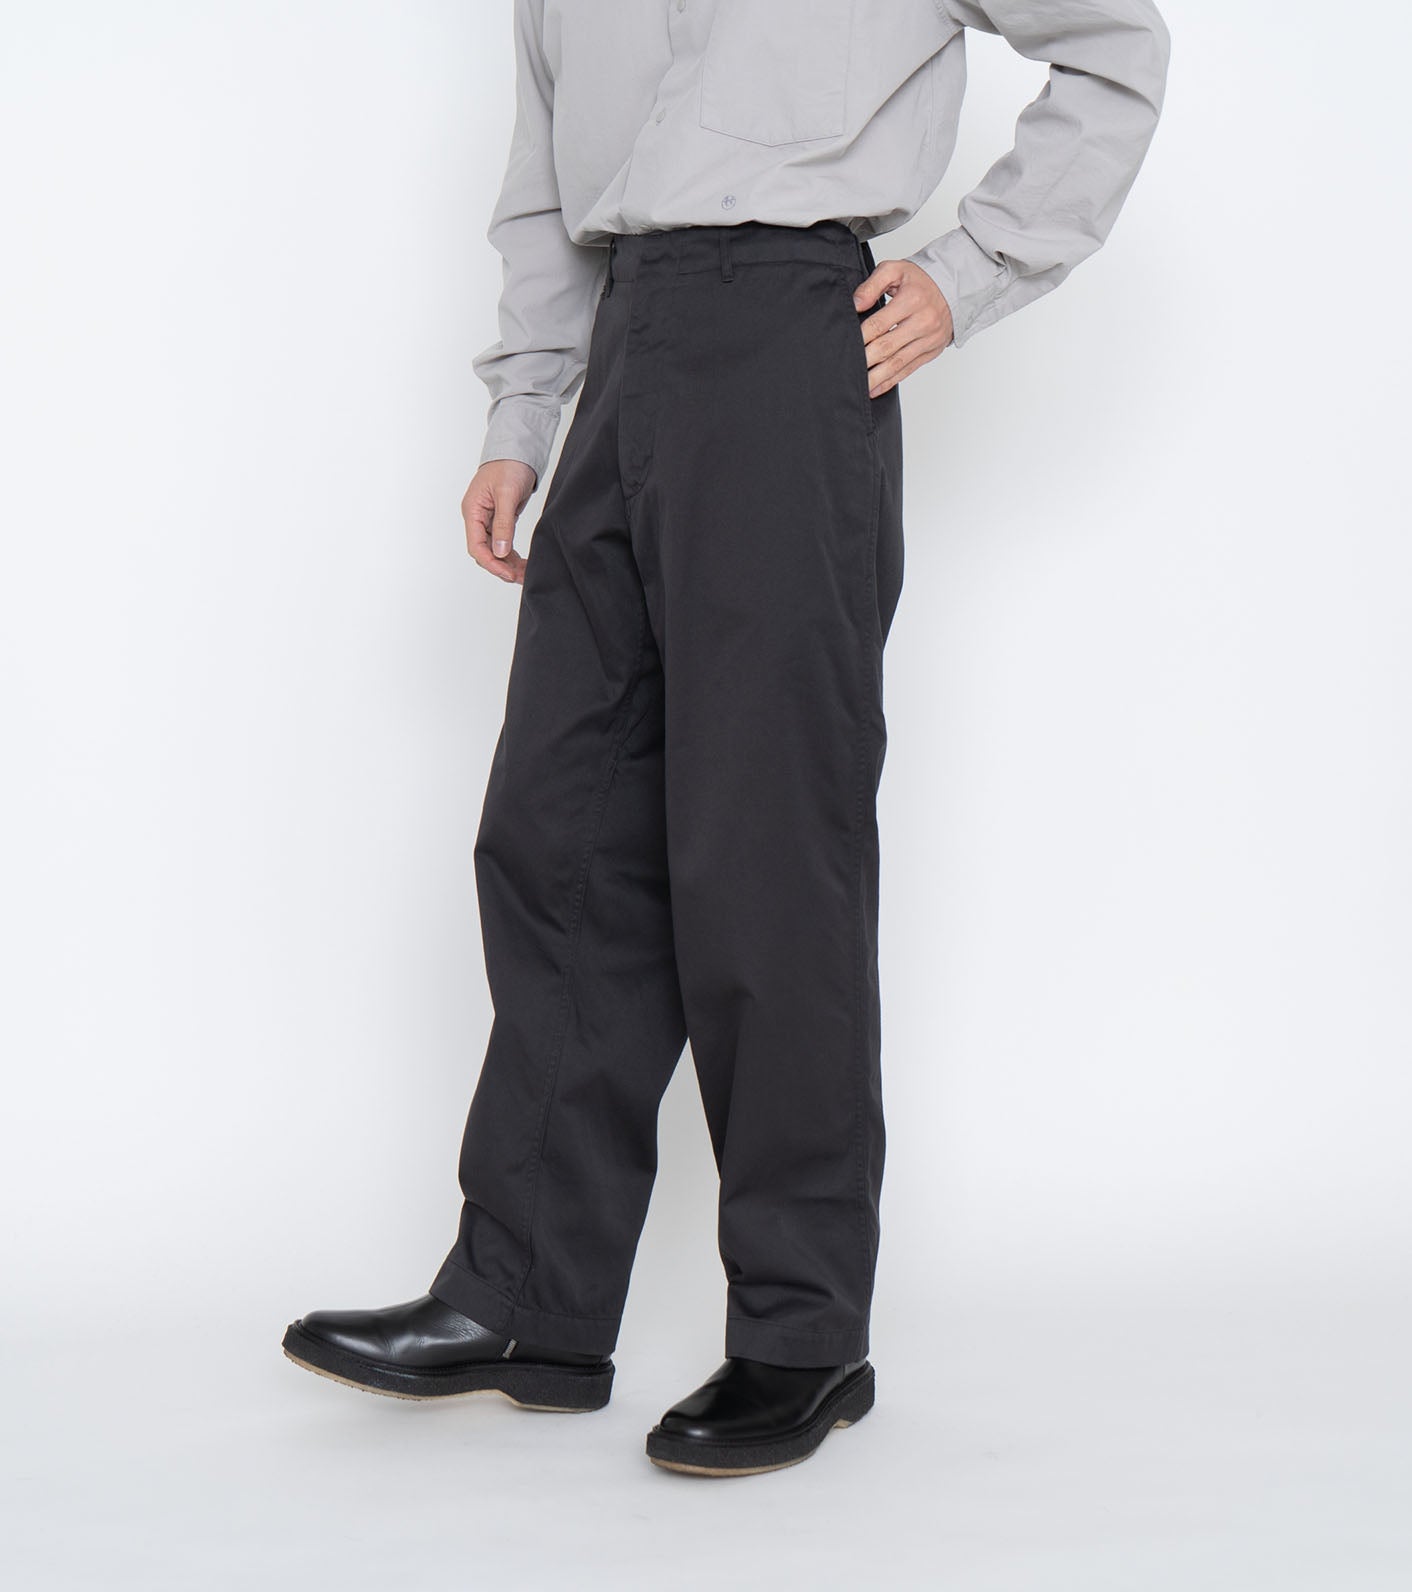 即購入歓迎ですNanamica 23ss Wide Chino Pants サイズ XL